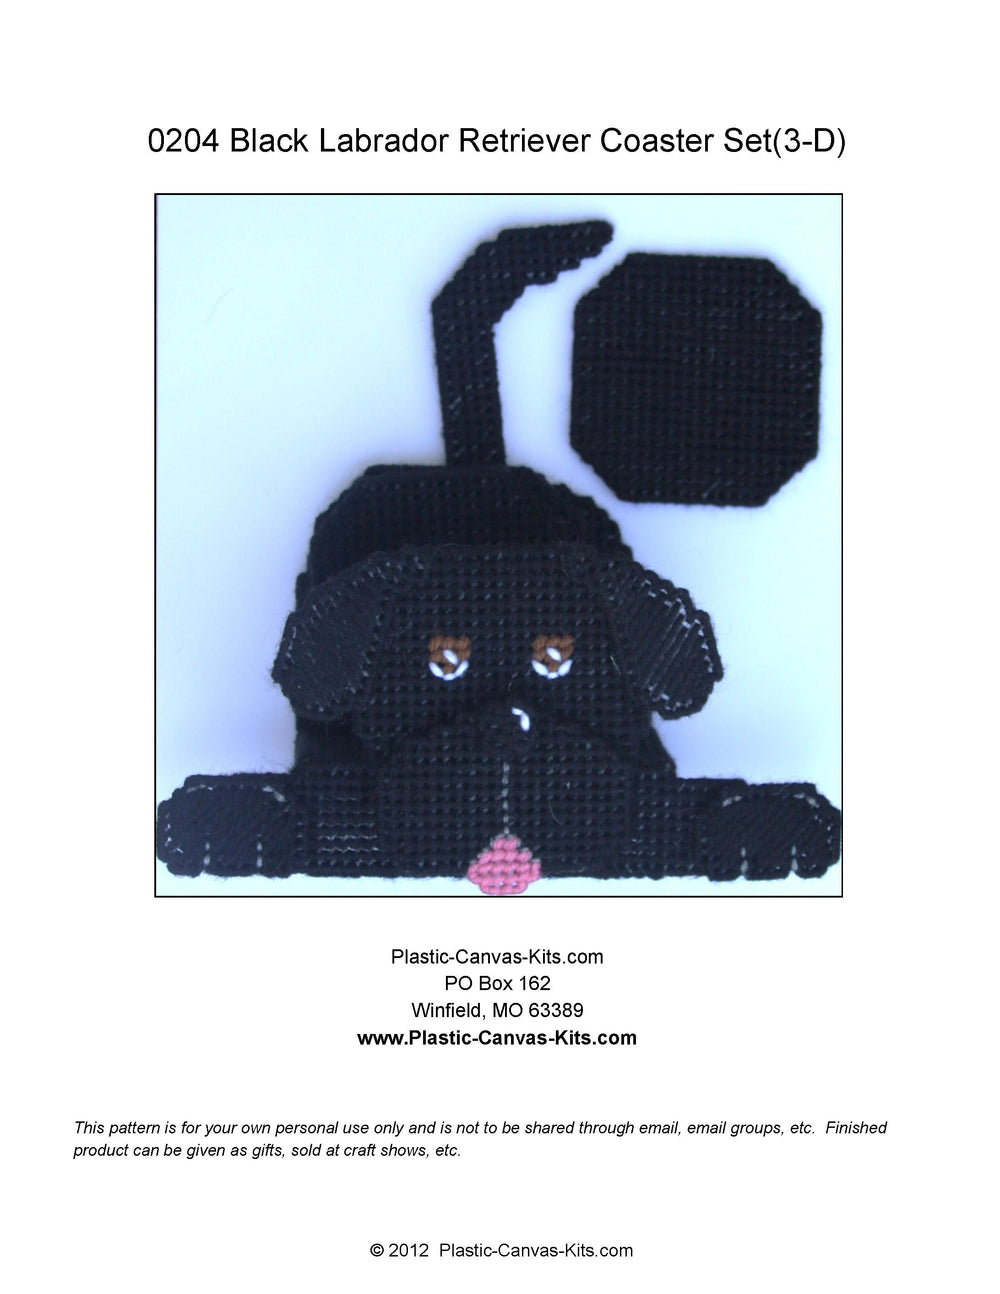 Black Labrador Retriever 3D Coaster Set